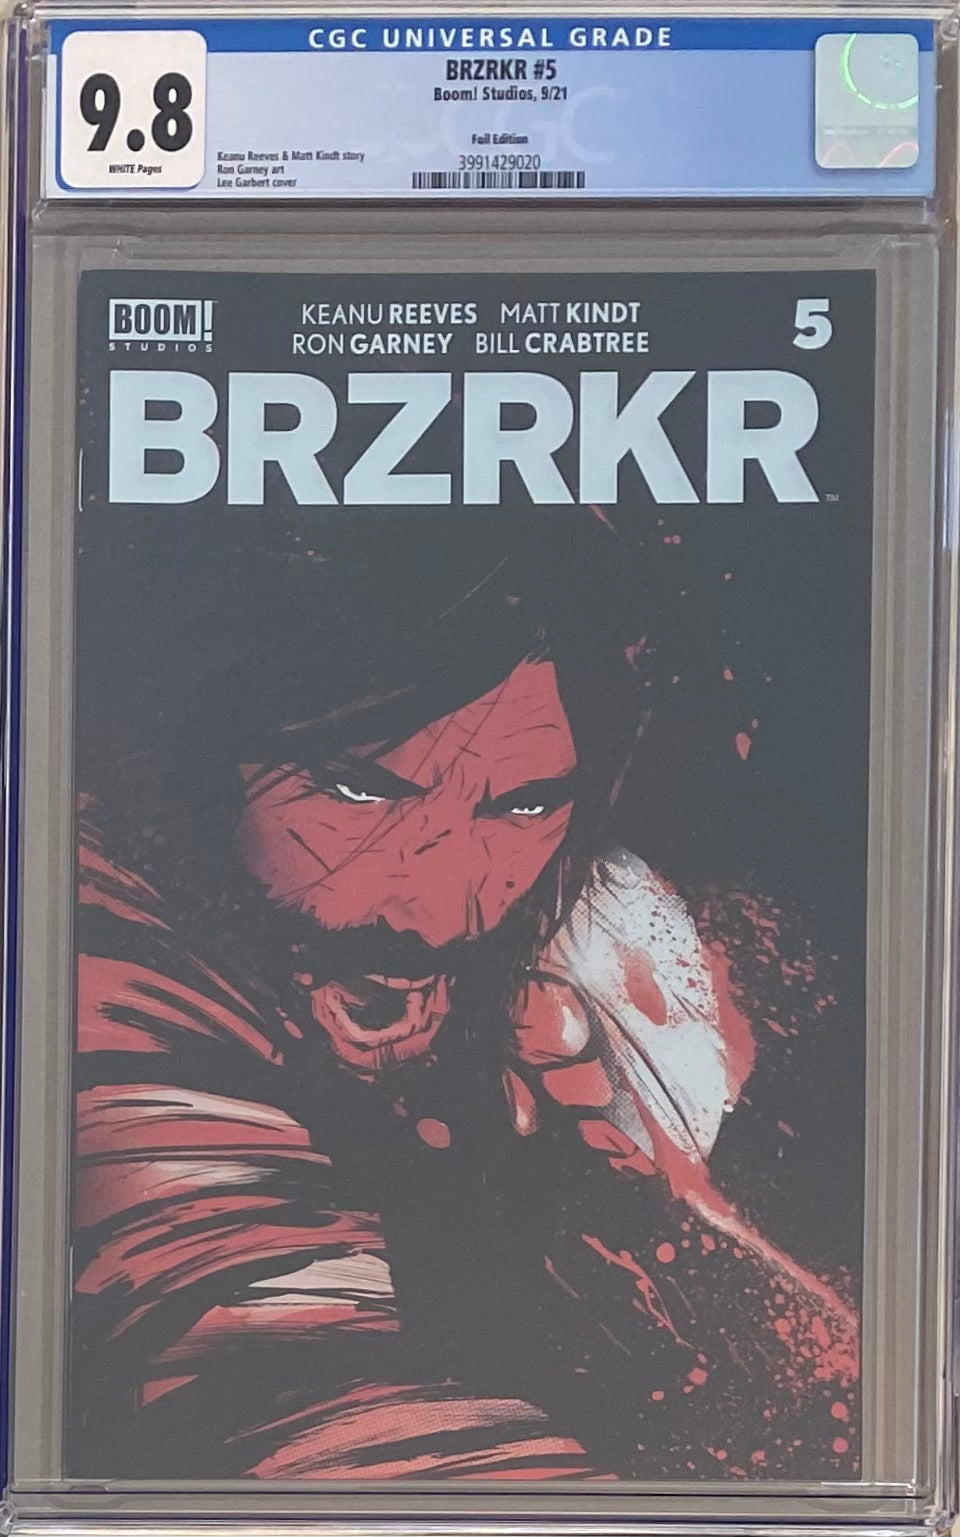 BRZRKR #5 Cover C Garbett Foil Variant CGC 9.8 (Berzerker)